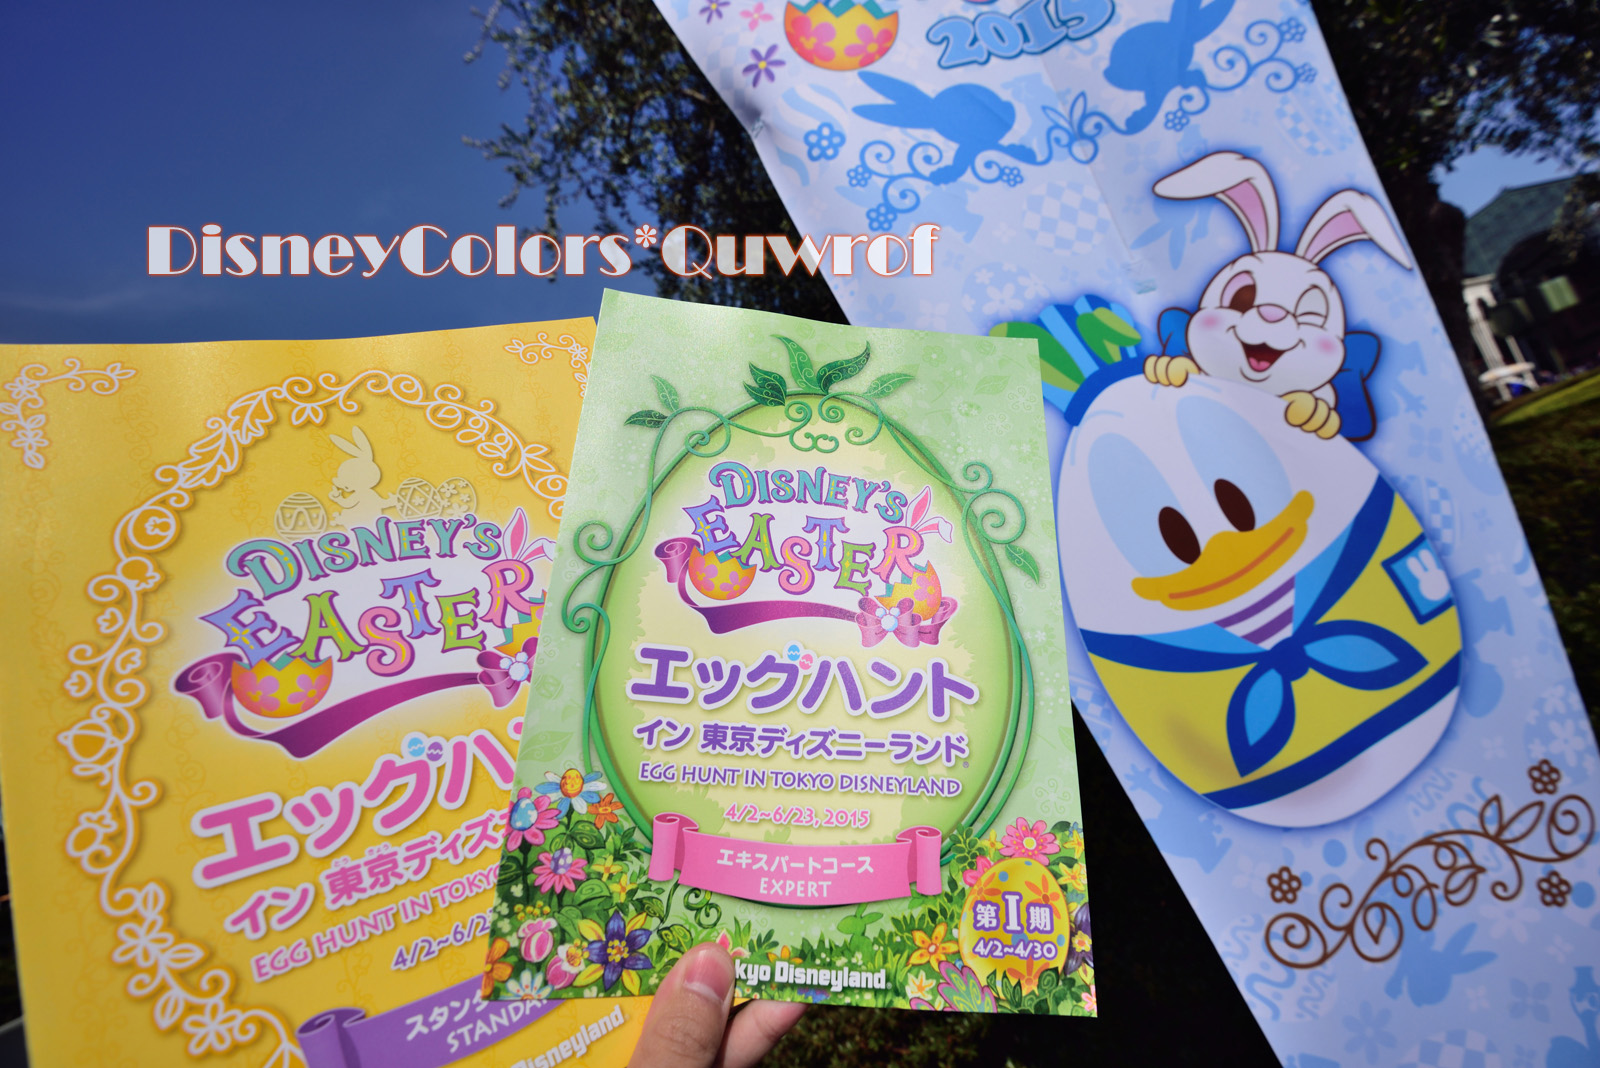 エッグハントに挑むにんじんジャージ軍団 15年4月12日 東京ディズニーランドのインレポ Disney Colors Blog